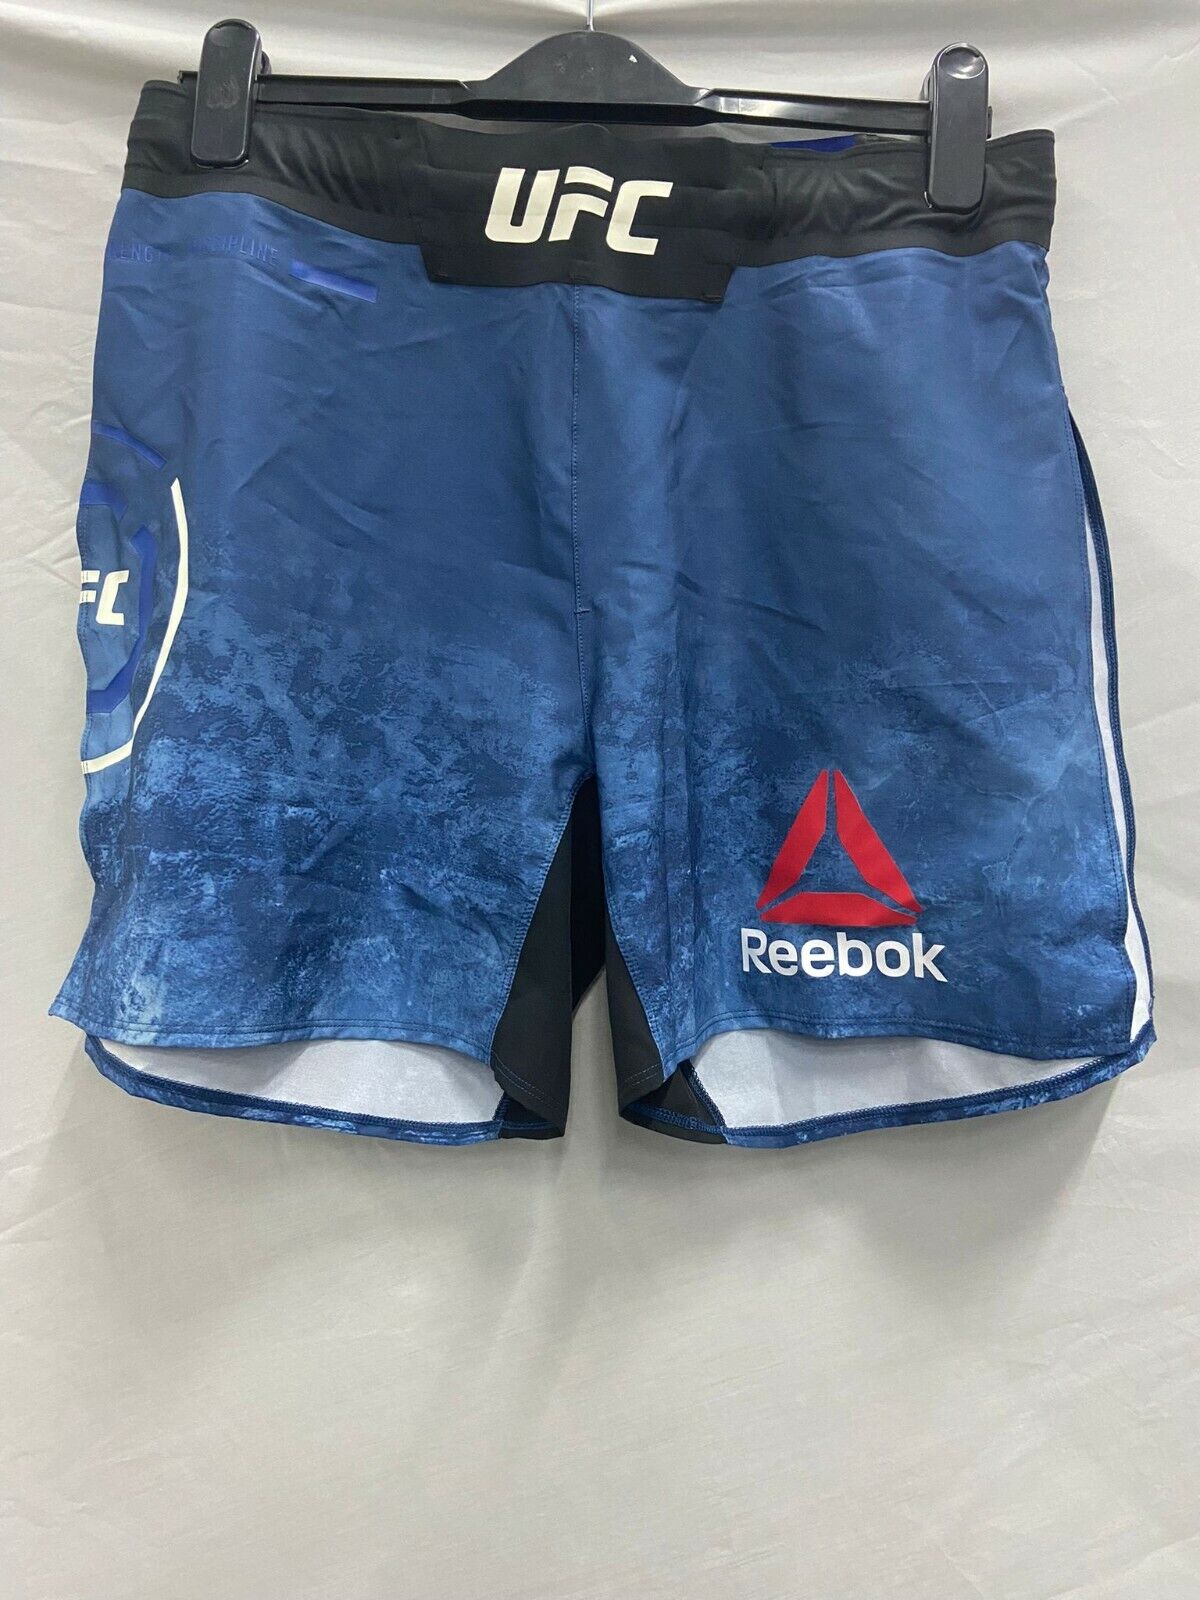 Reebok UFC Fight Brief Boxer Shorts